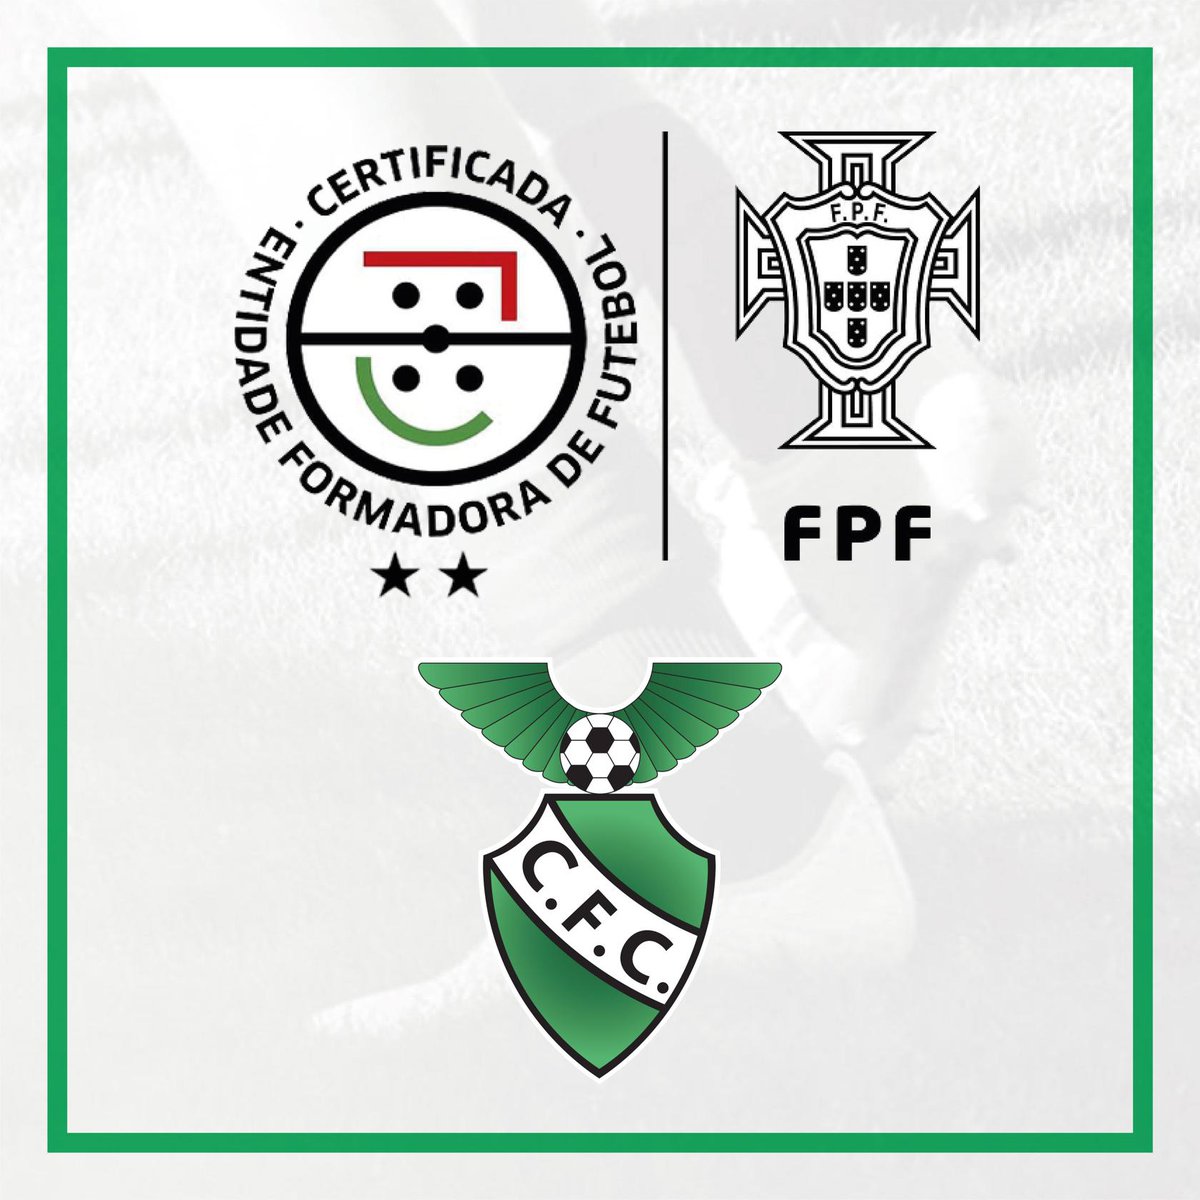 Custóias FC distinguindo pela FPF como Entidade Formadora Certificada 2 estrelas